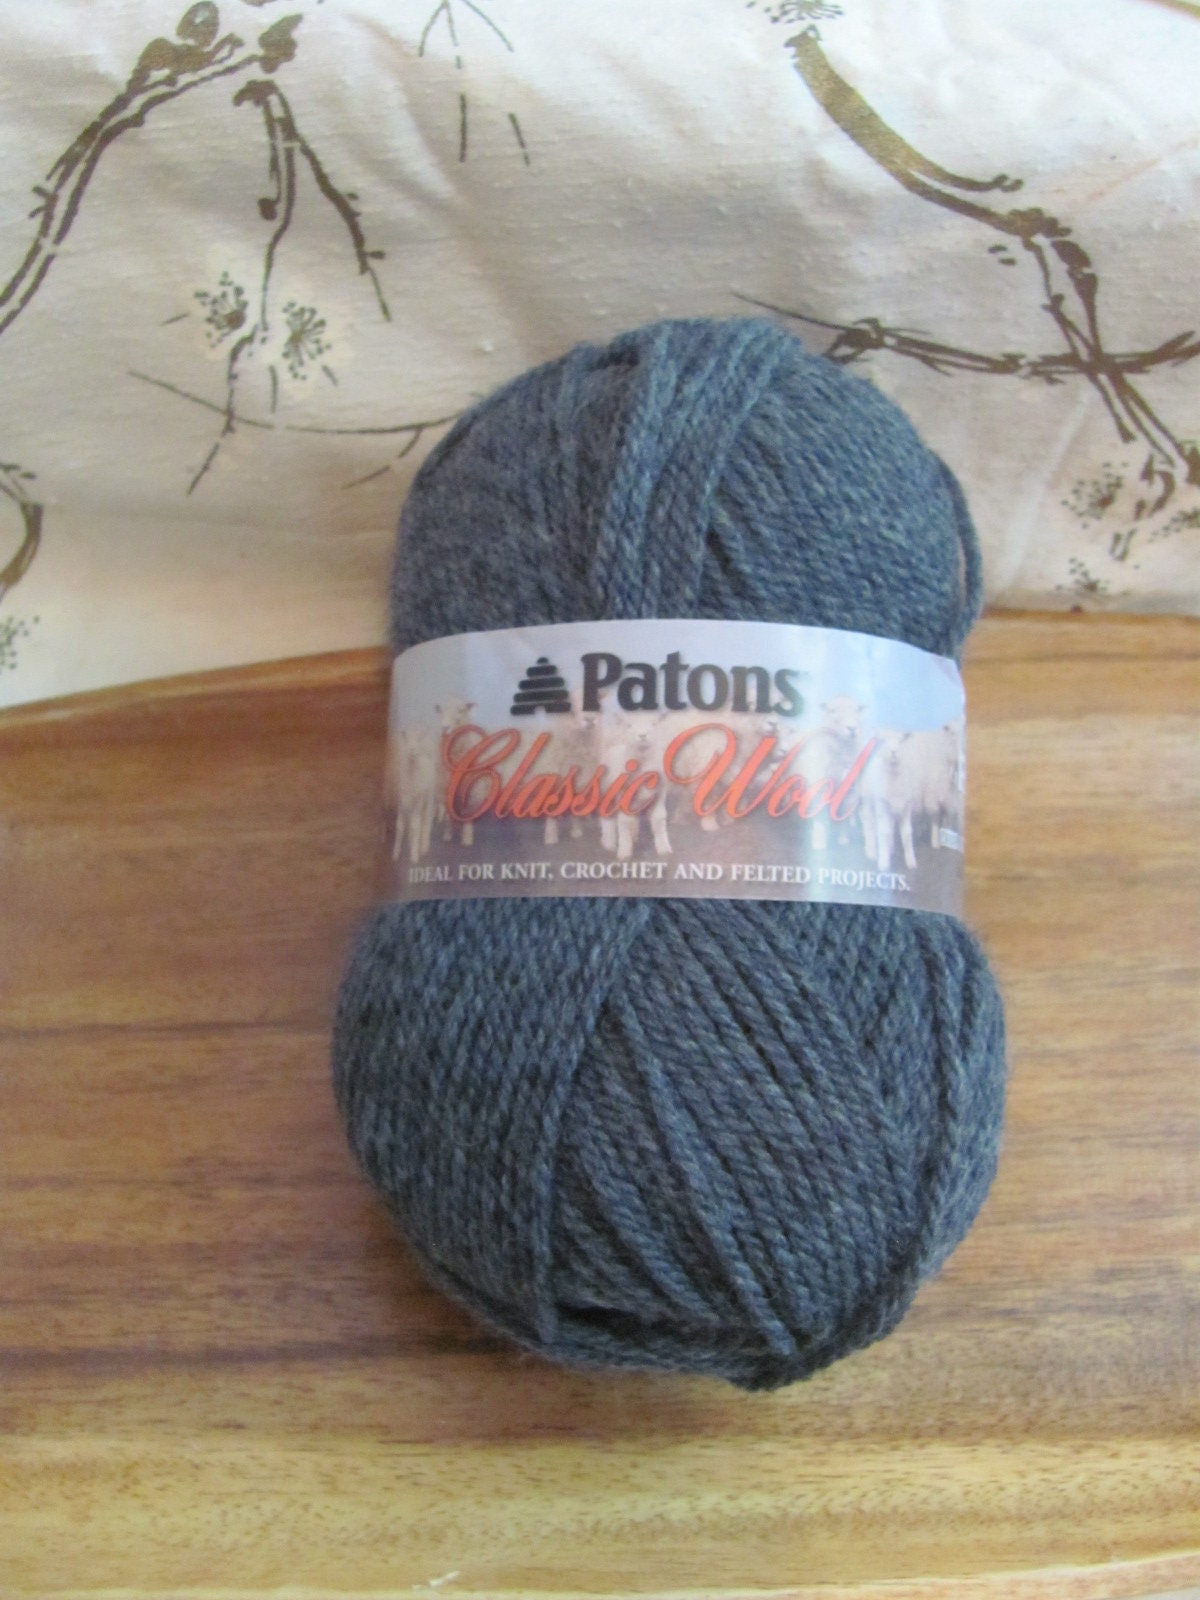 Bernat Blanket Chenille Crochet Knitting Yarn Large Skein Bulky